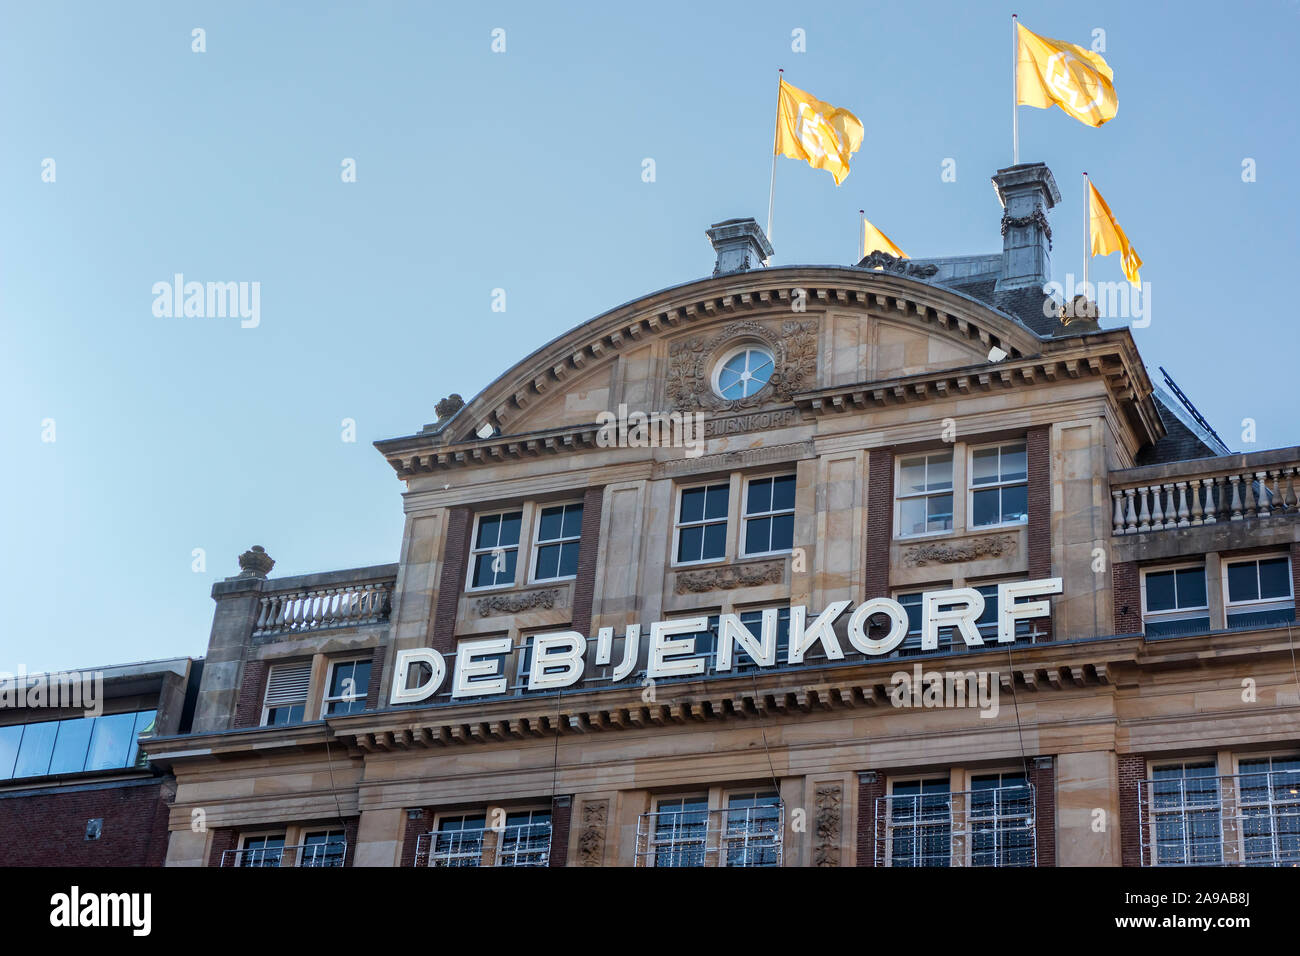 Amsterdam, Pays-Bas - 30 octobre 2019 : le signe de Bijenkorf, le flagship sur la Place Dam à partir de la des grands magasins aux Pays-Bas Banque D'Images